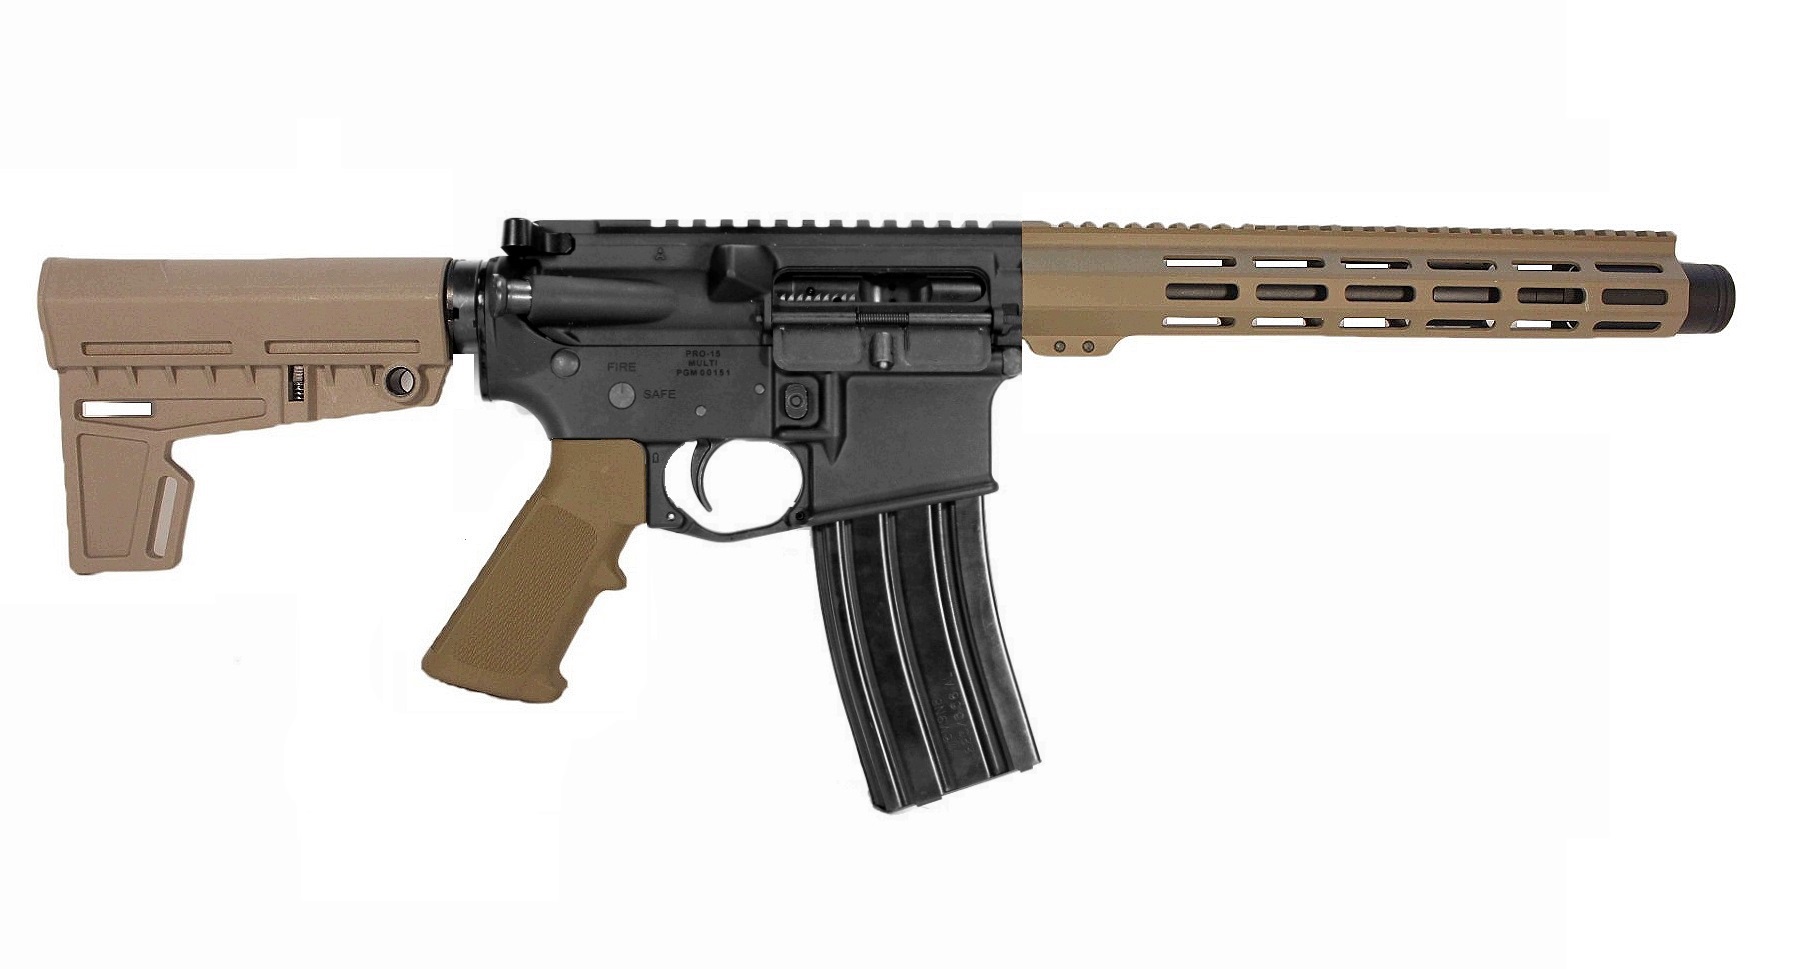 10.5" 7.62x39 AR-15 Pistol in BLK/FDE Color 